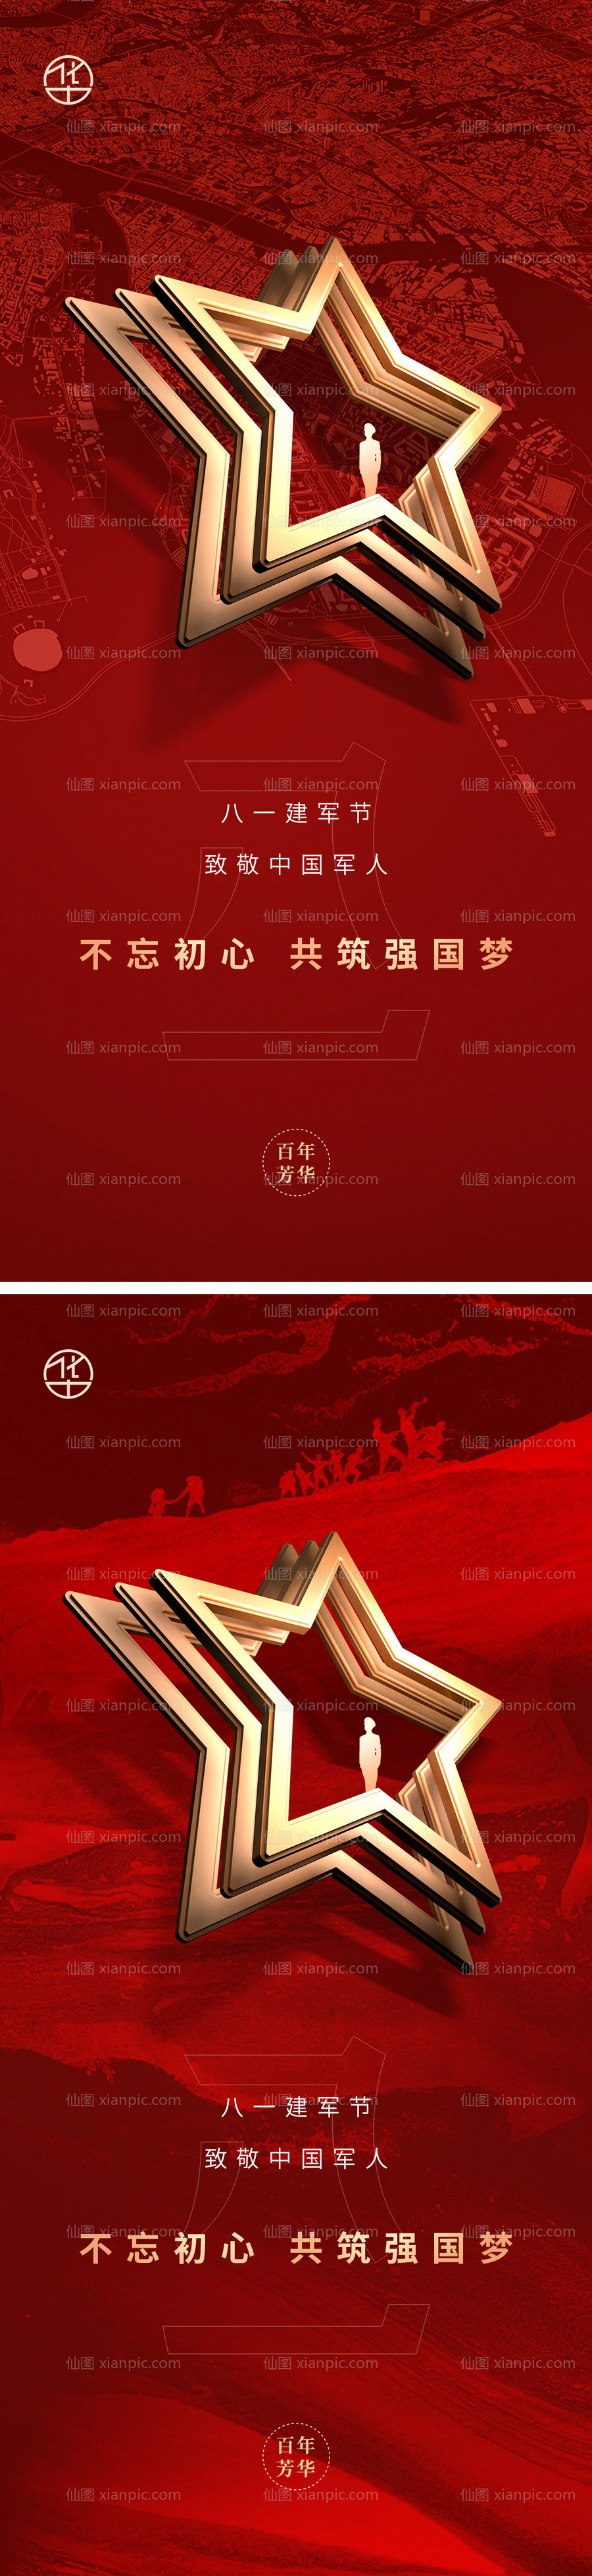 素材乐-建军节红金系列海报